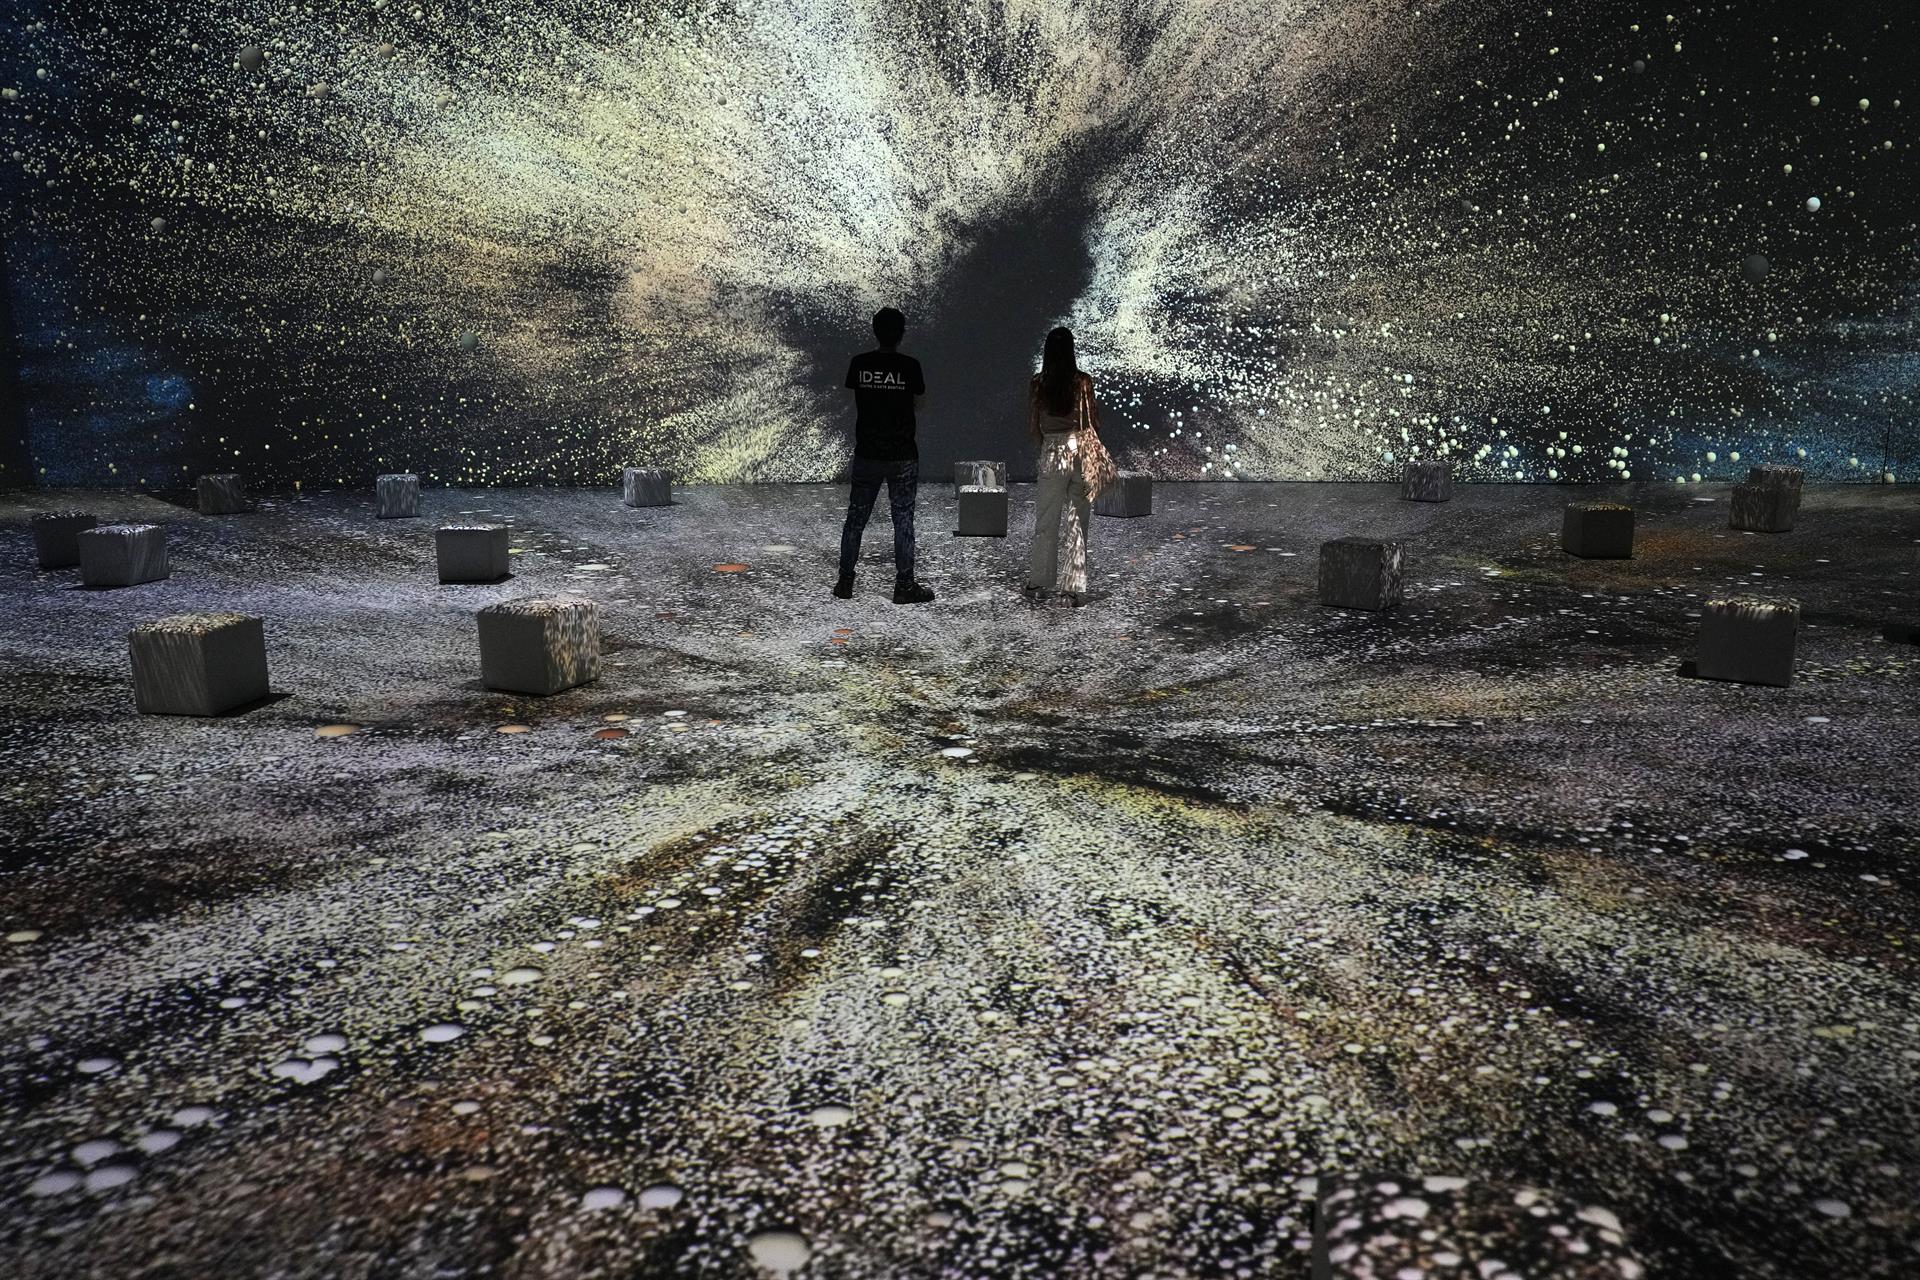 La exposición inmersiva "Dalí Cibernético" abre sus puertas este martes en el Centro de Artes Digitales Ideal de Barcelona, que presenta un insólito recorrido por el onírico universo creado por el artista surrealista a través de proyecciones de gran formato, instalaciones interactivas, hologramas, realidad virtual e inteligencia artificial. EFE/Alejandro García